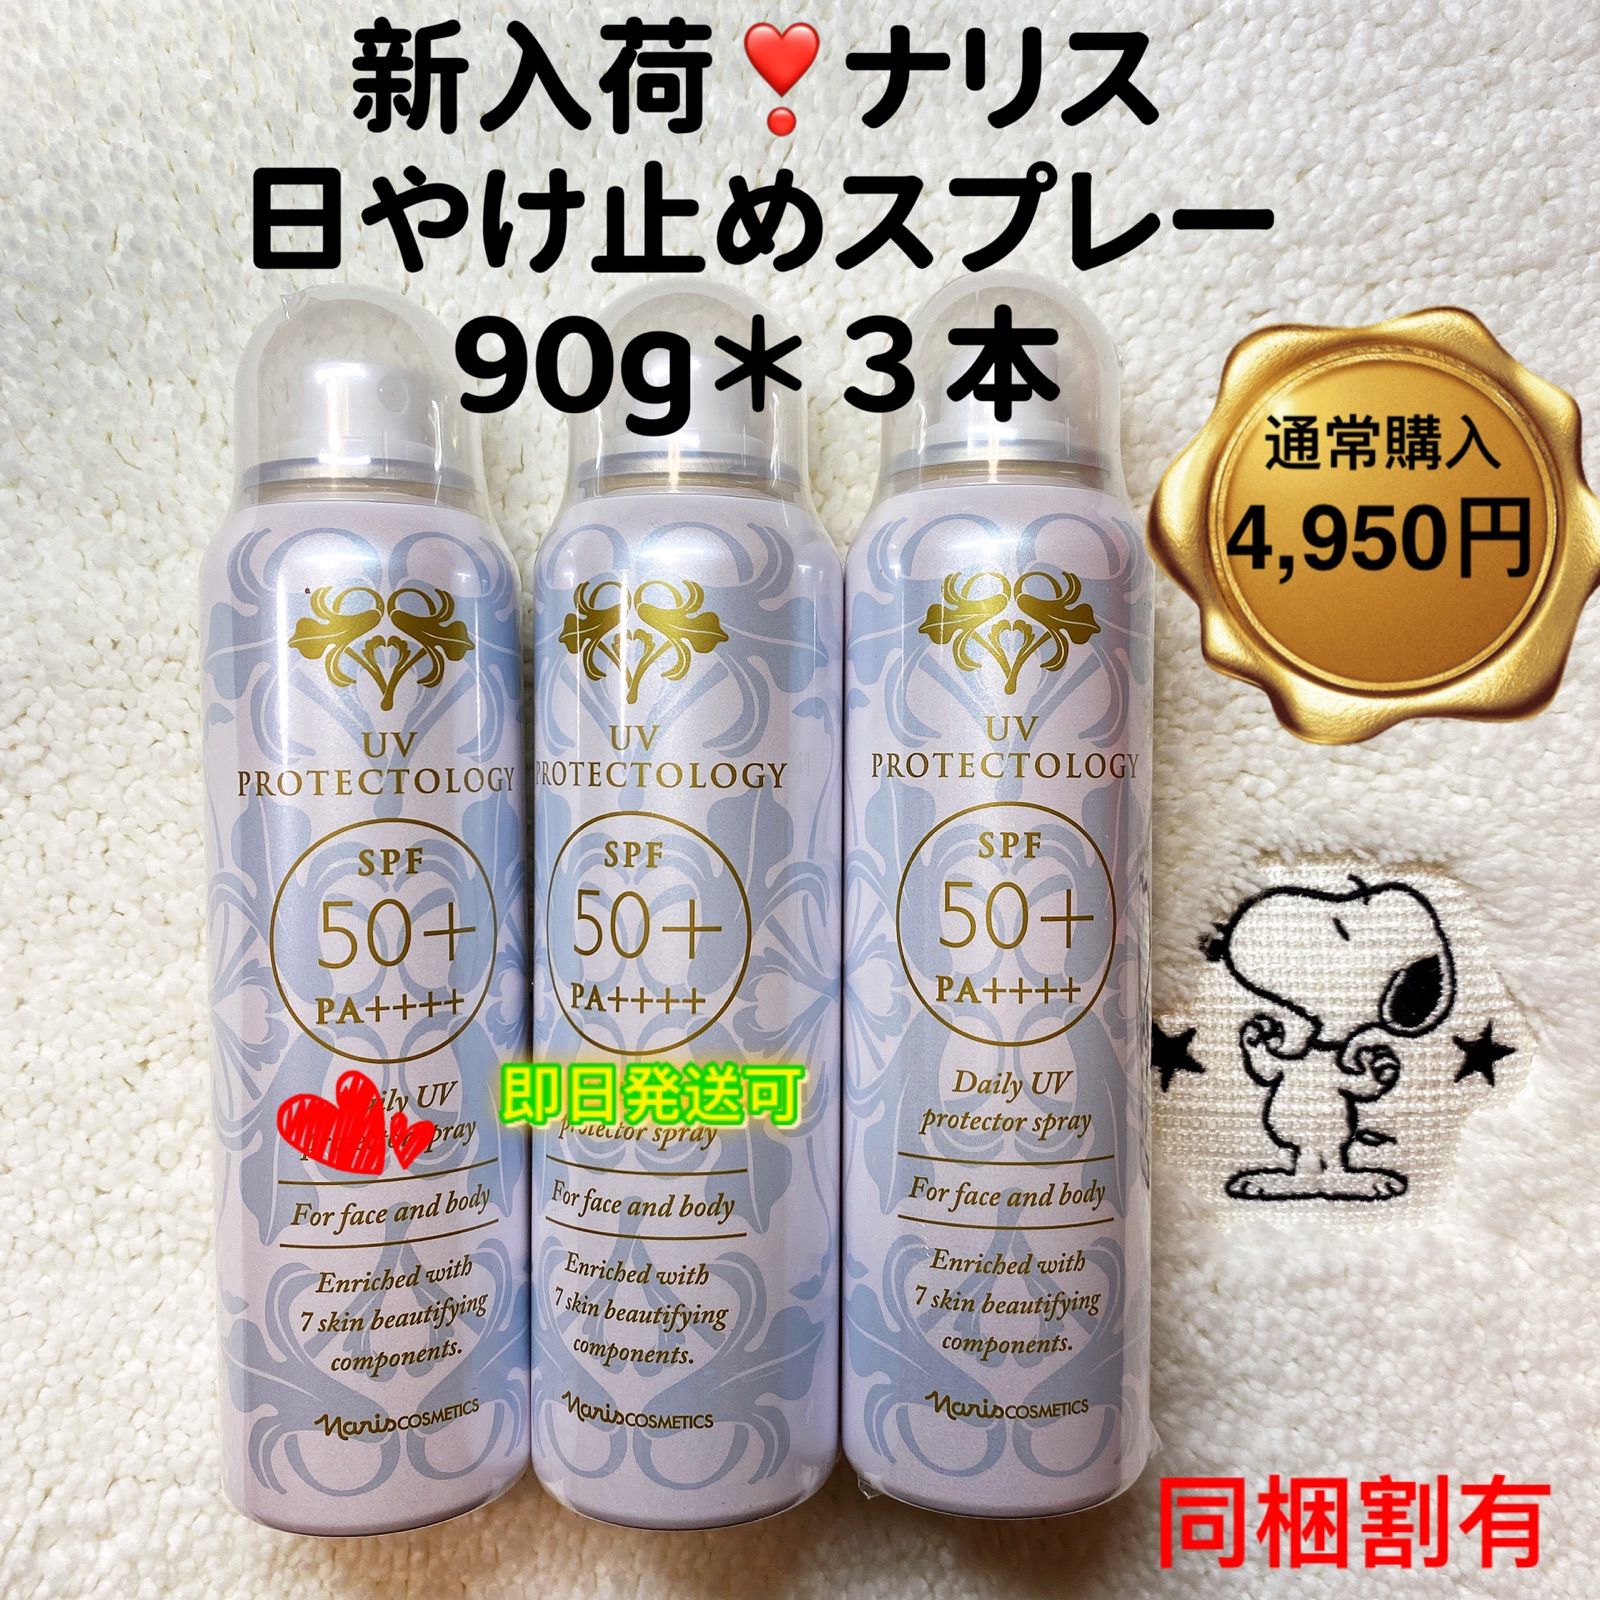 【新入荷】ナリス化粧品UV プロテクトロジー(日焼け止めスプレー) 90g＊③本